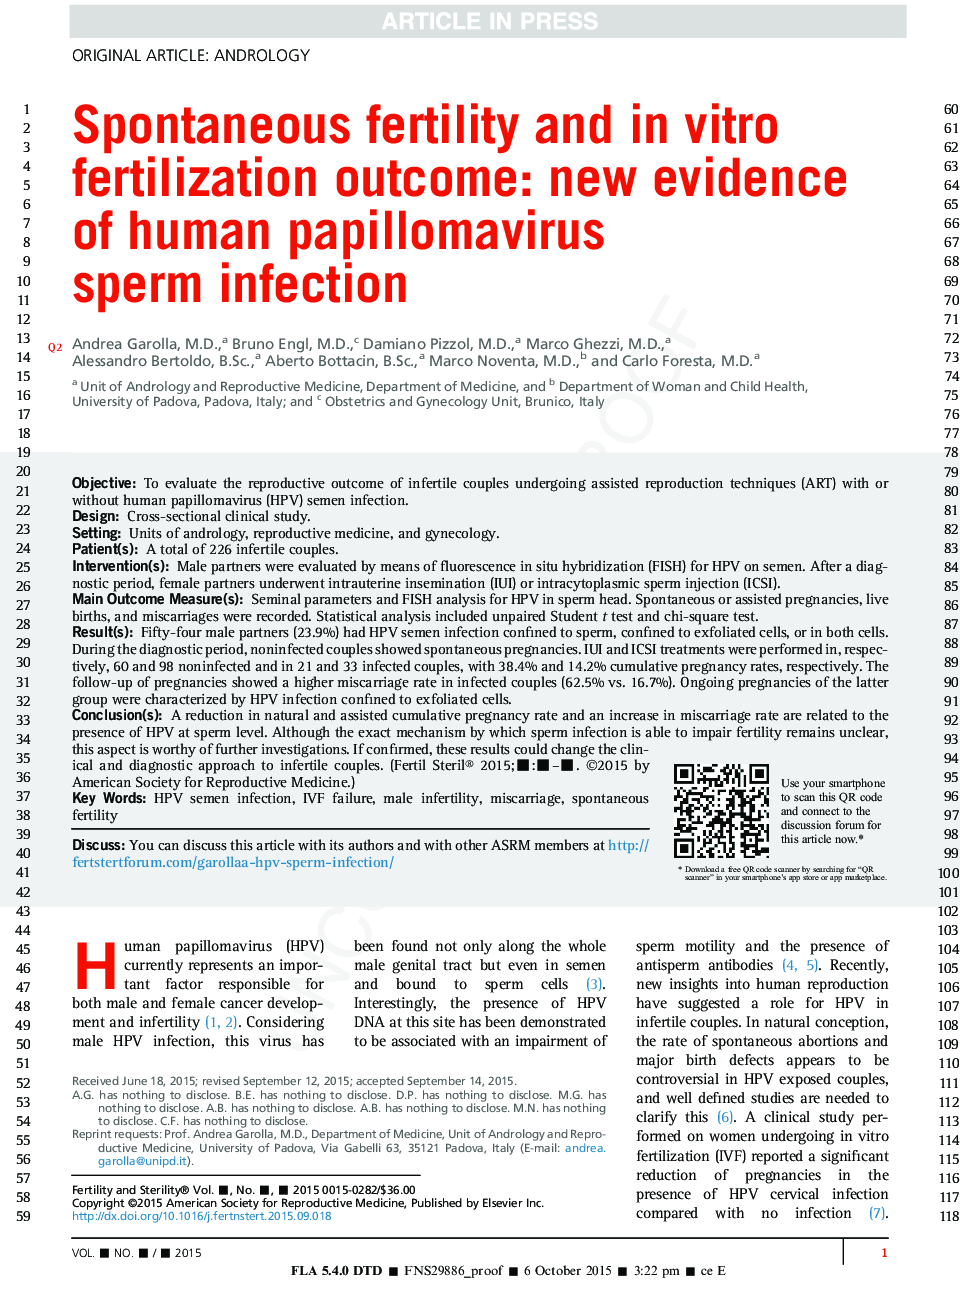 باروری خودبهخود و نتایج درمانی لقاح آزمایشگاهی: شواهد جدید در مورد عفونت اسپرم انسان با ویروس پاپیلوم 